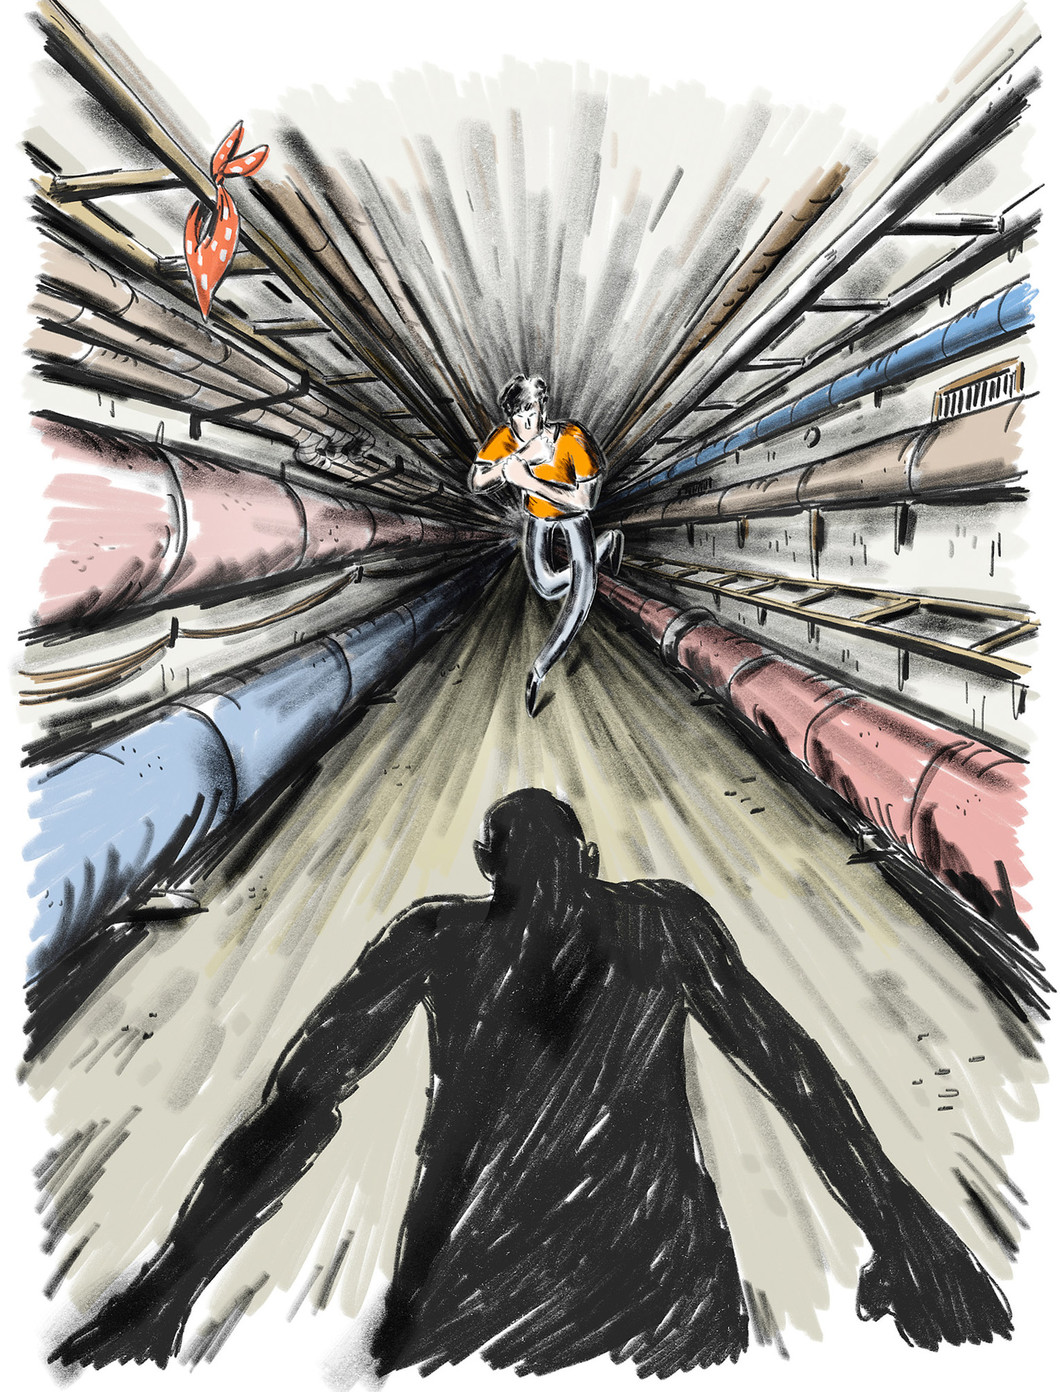 Der Jugendroman 'Raus aus dem Tunnel' spielt zum Teil im titelgebenden "Kollektorgang": Junger Mann rennt in dunklem Tunnel vor schwarzem Schatten eines Mannes